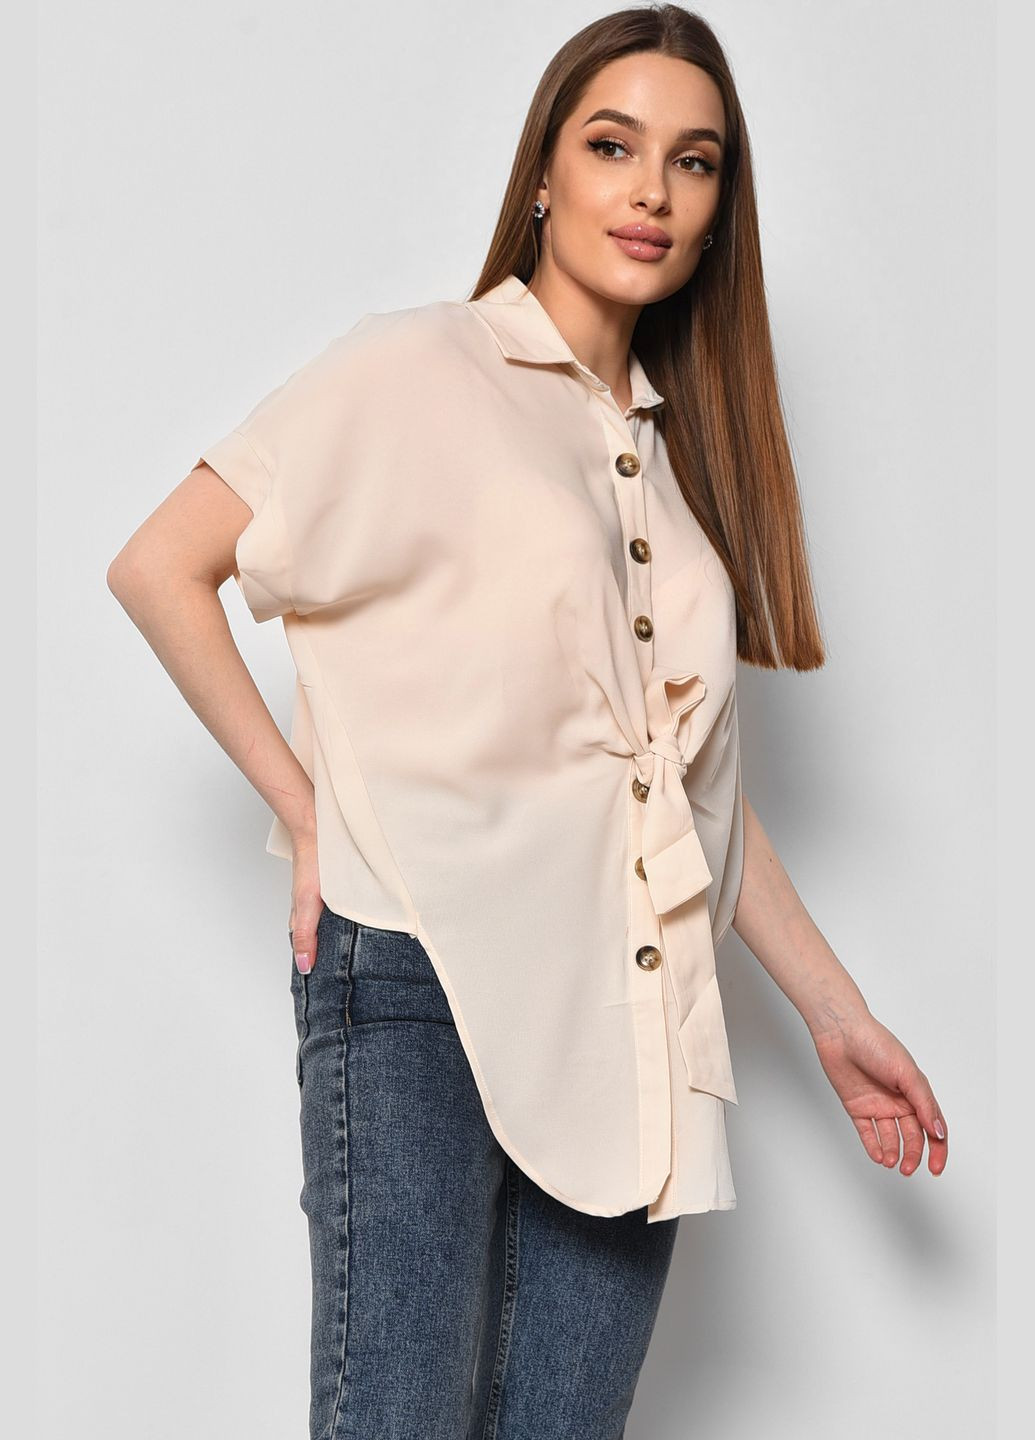 Светло-бежевая демисезонная блуза женская с коротким рукавом светло-бежевого цвета с баской Let's Shop